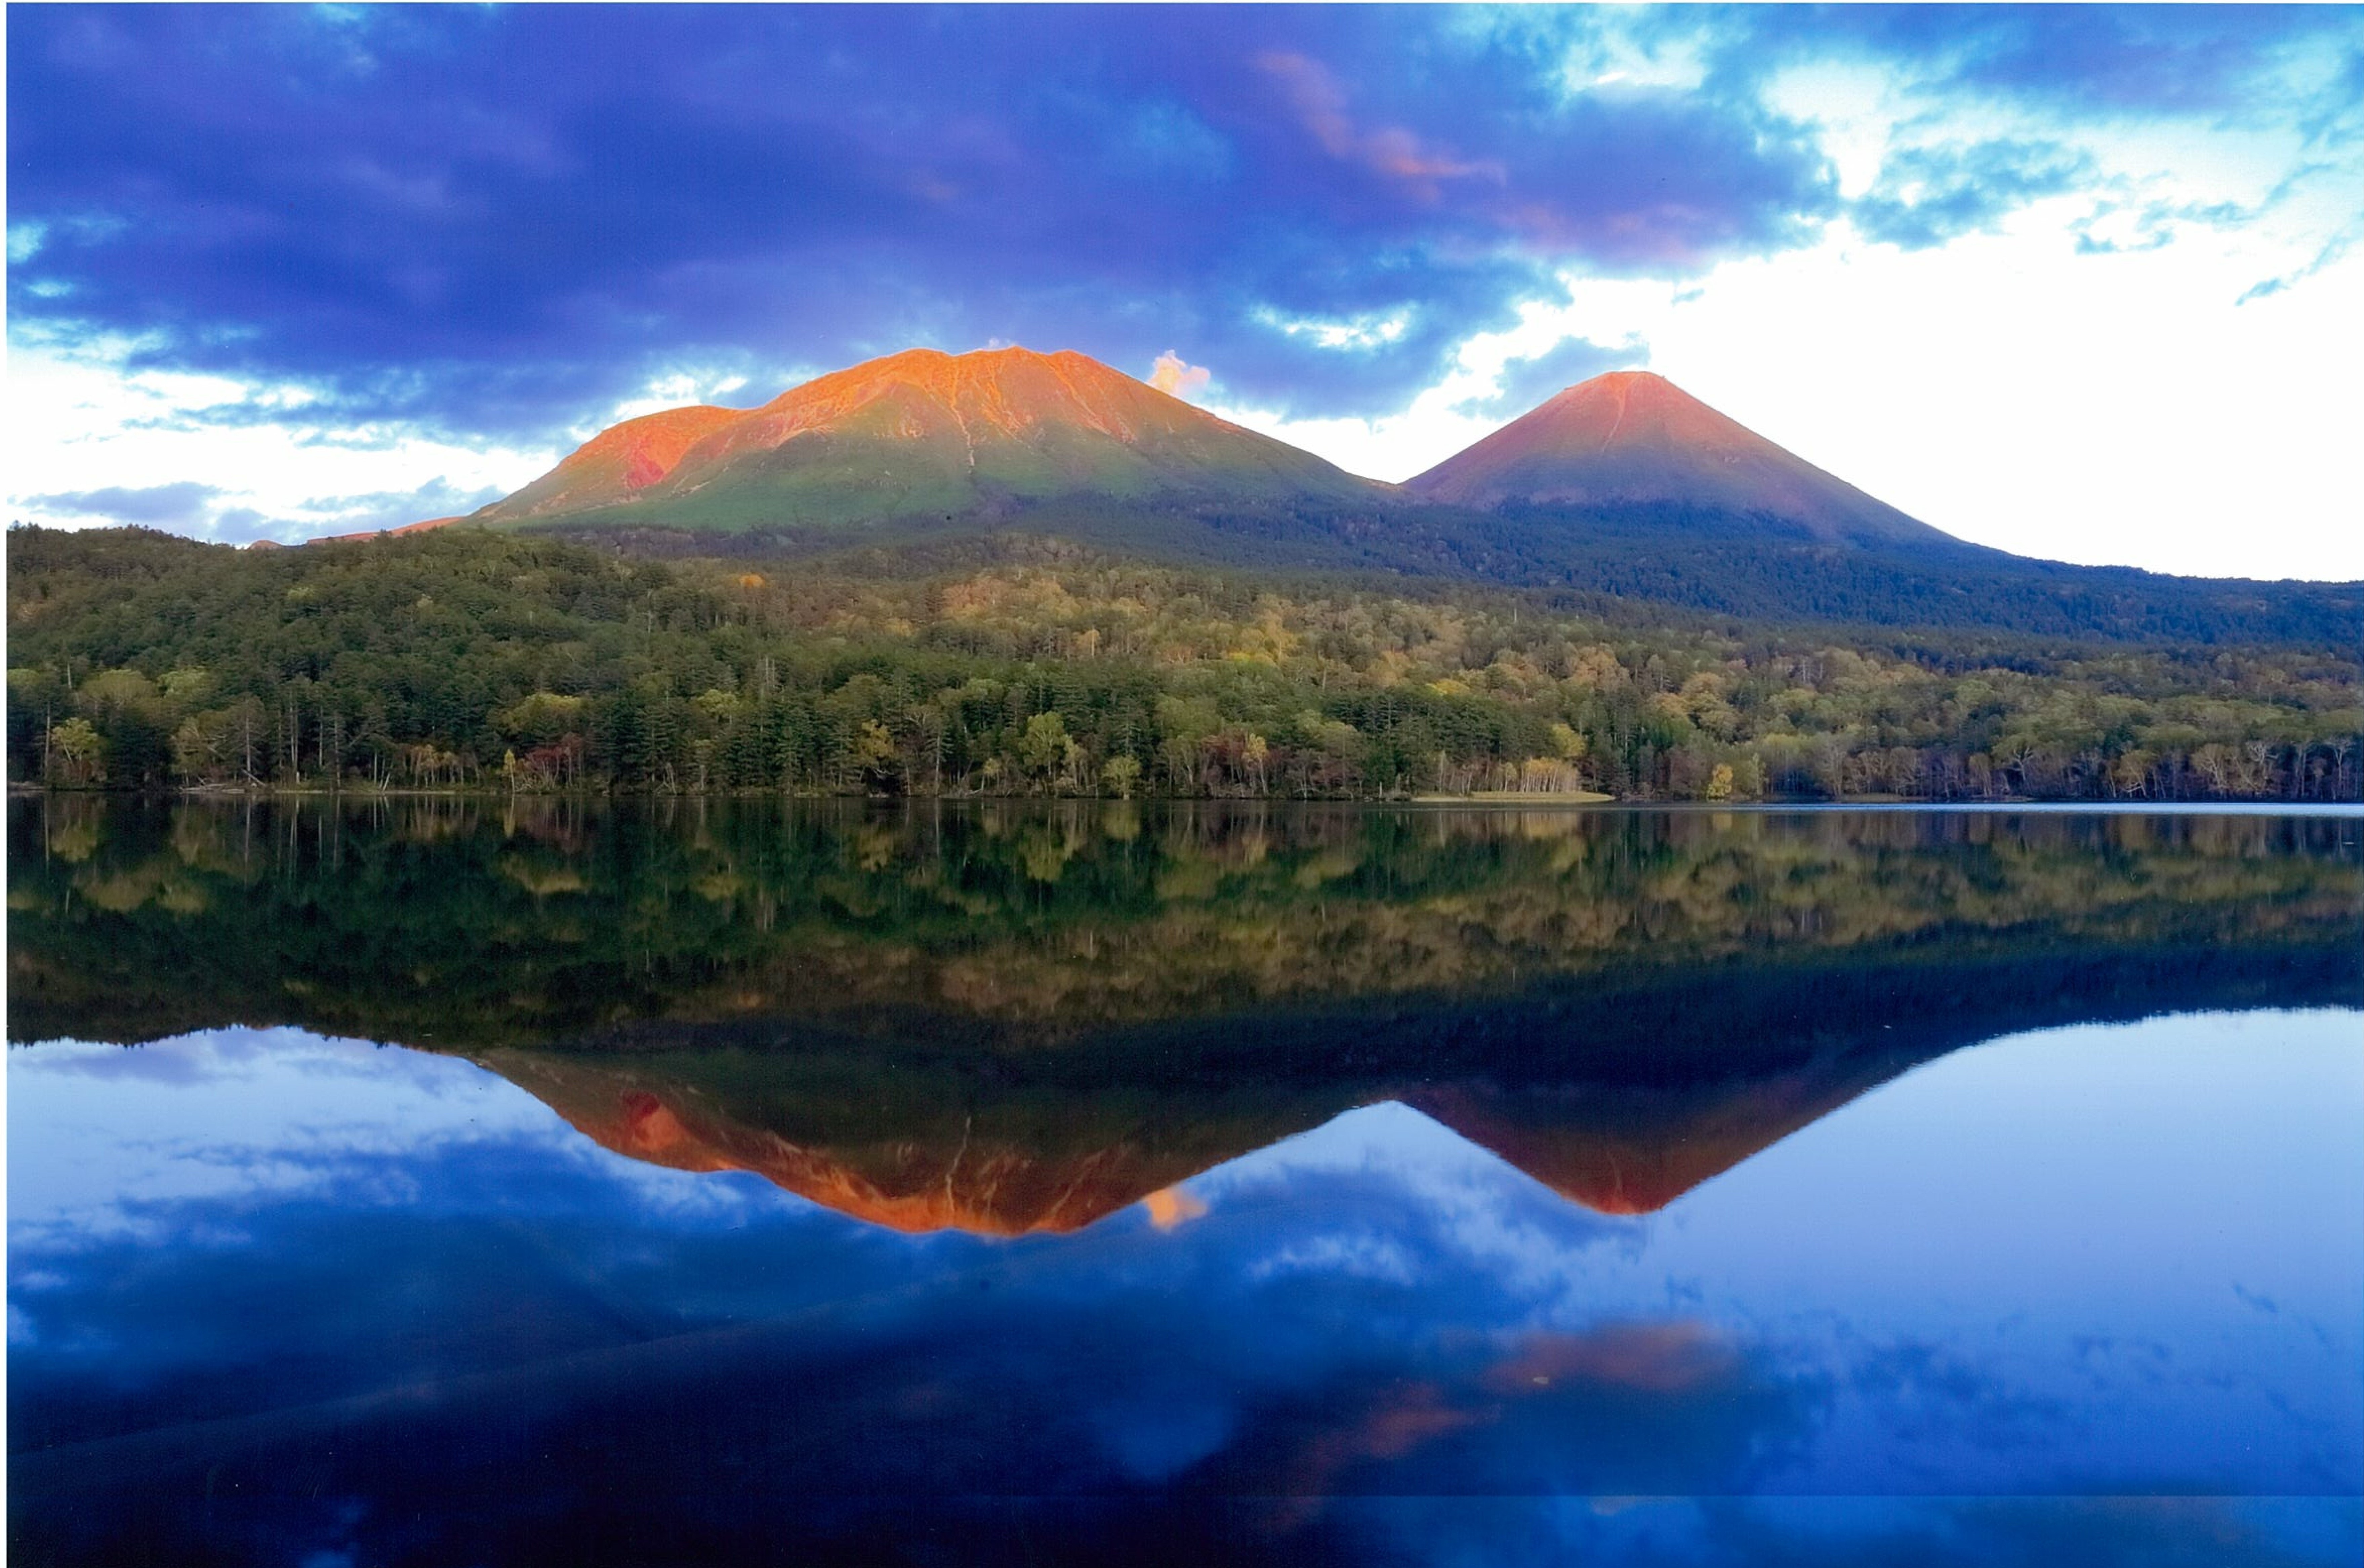 風のないオンネトーの夕景、夕陽が照らす雌阿寒岳と阿寒富士の神々しい姿を澄み切った湖面が映し出している。